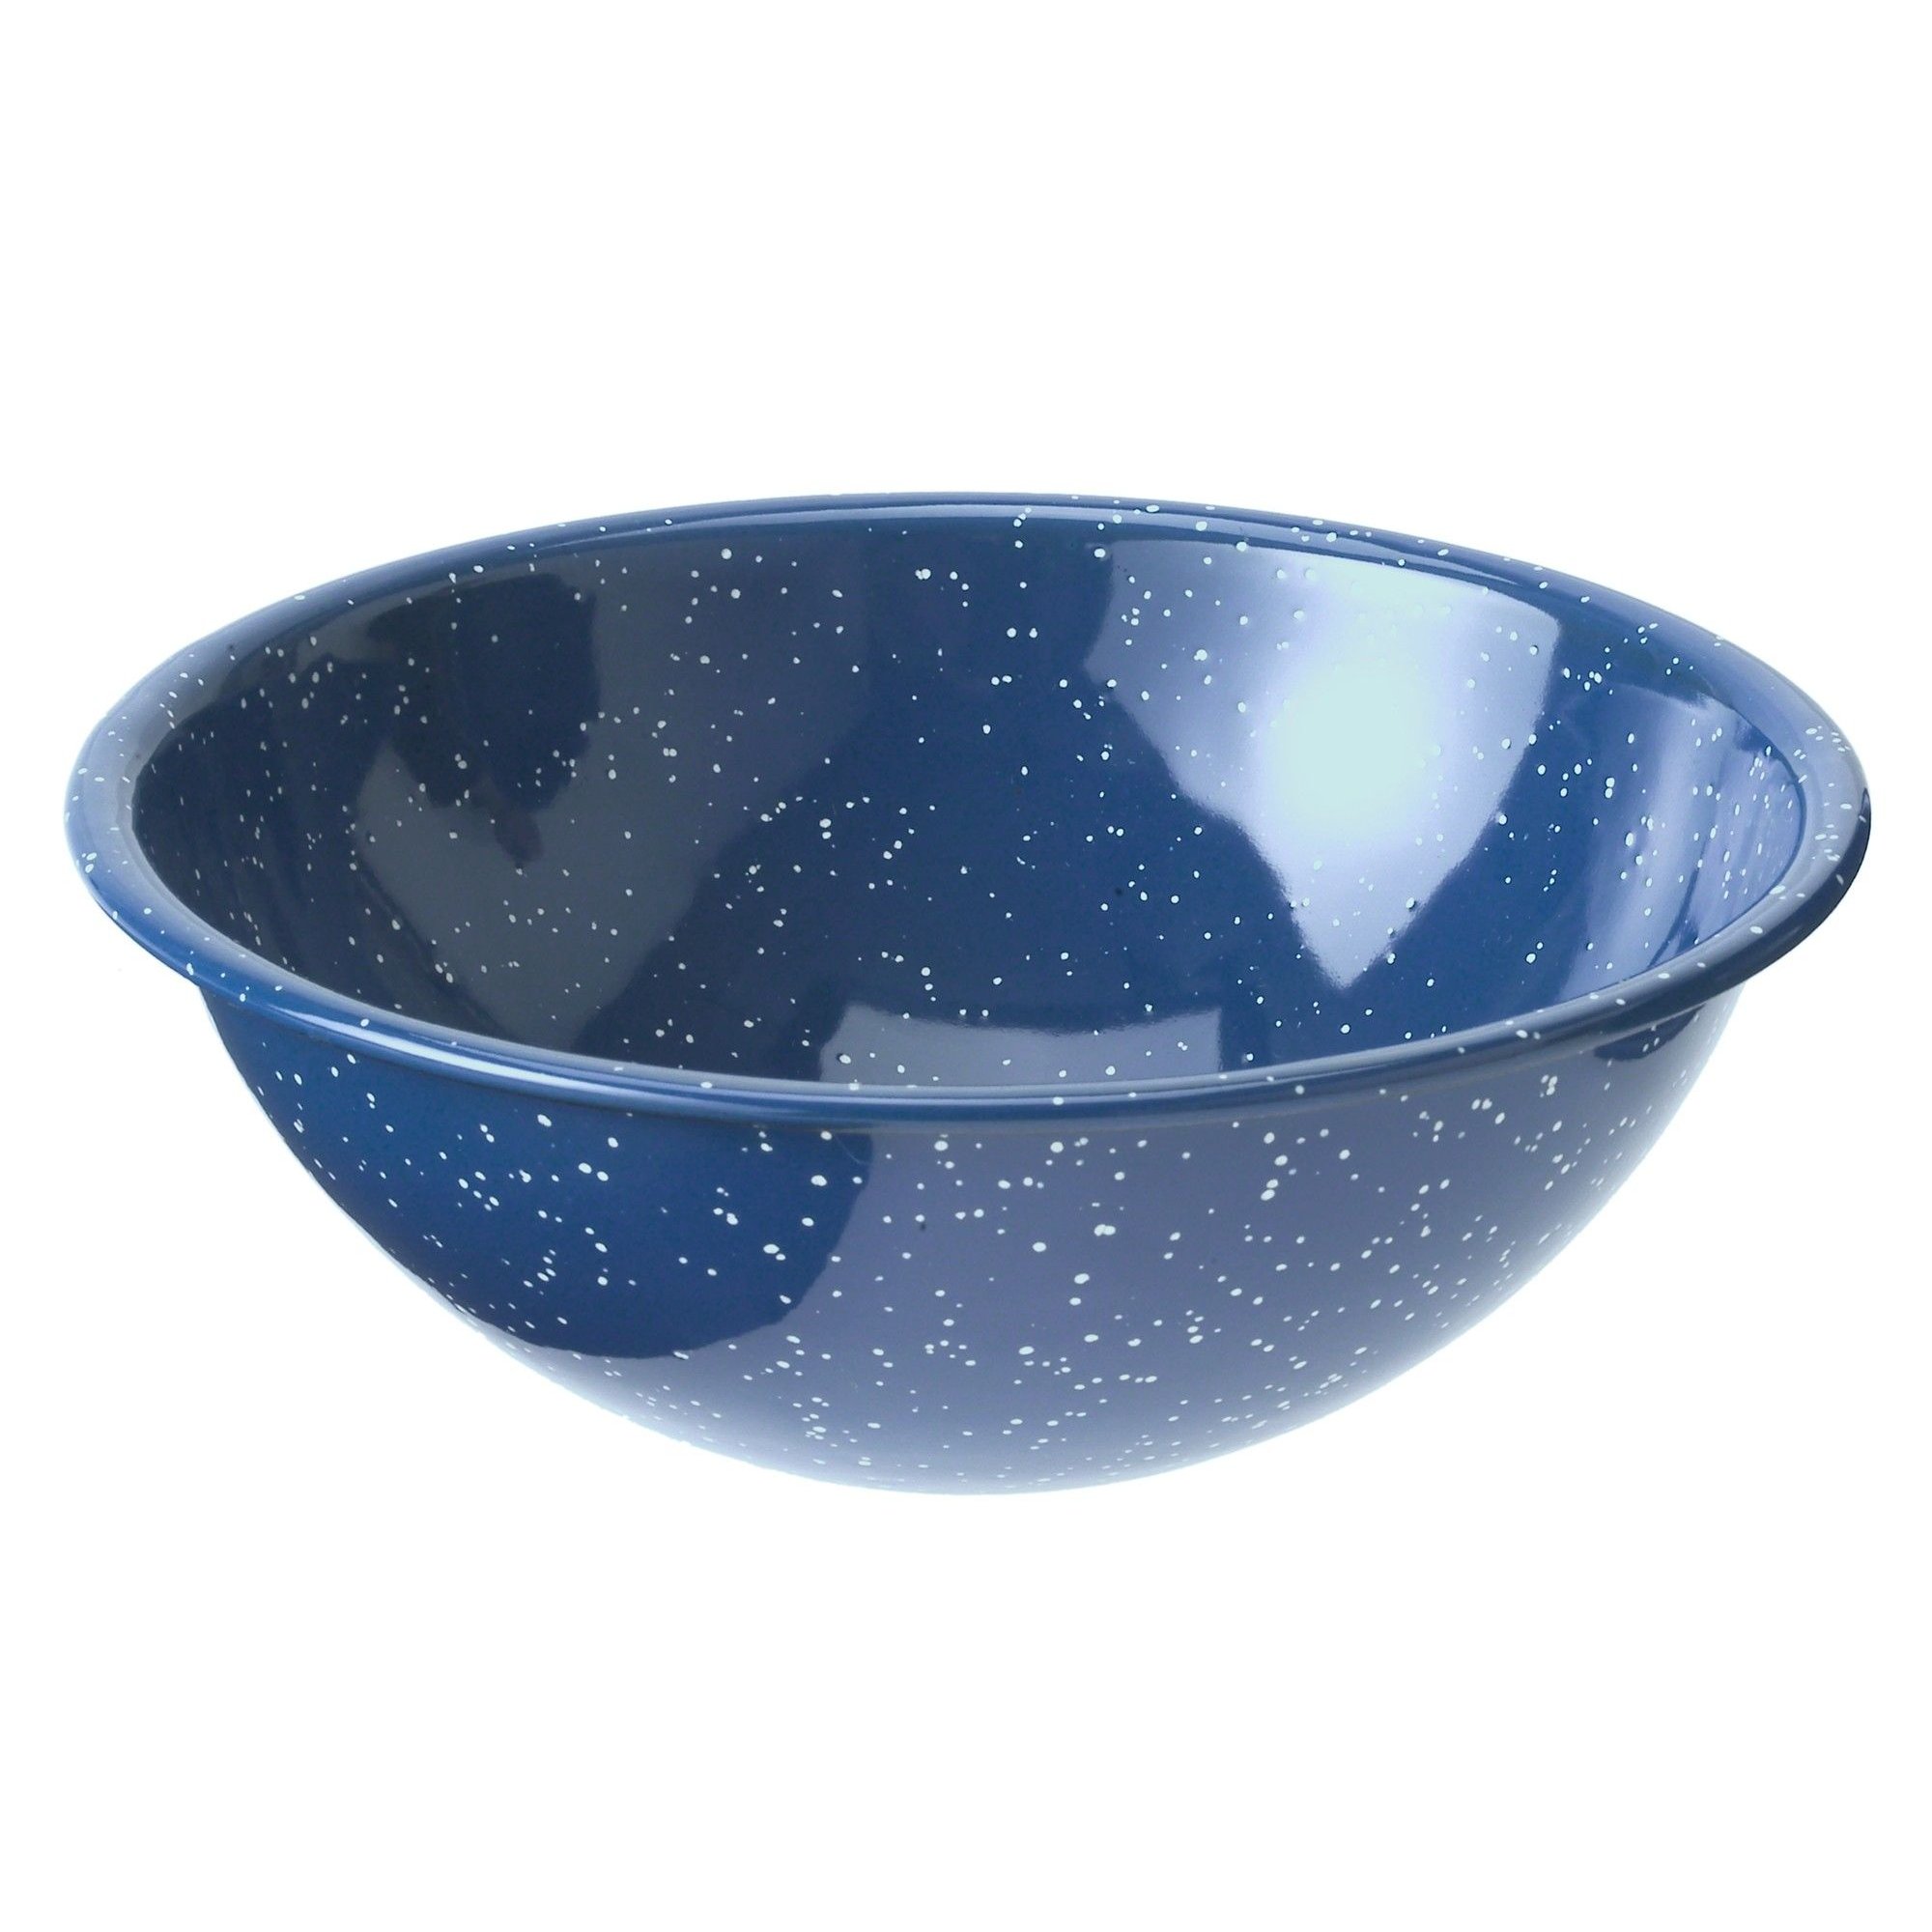 Enamelware Mixing Bowl 7" Blue